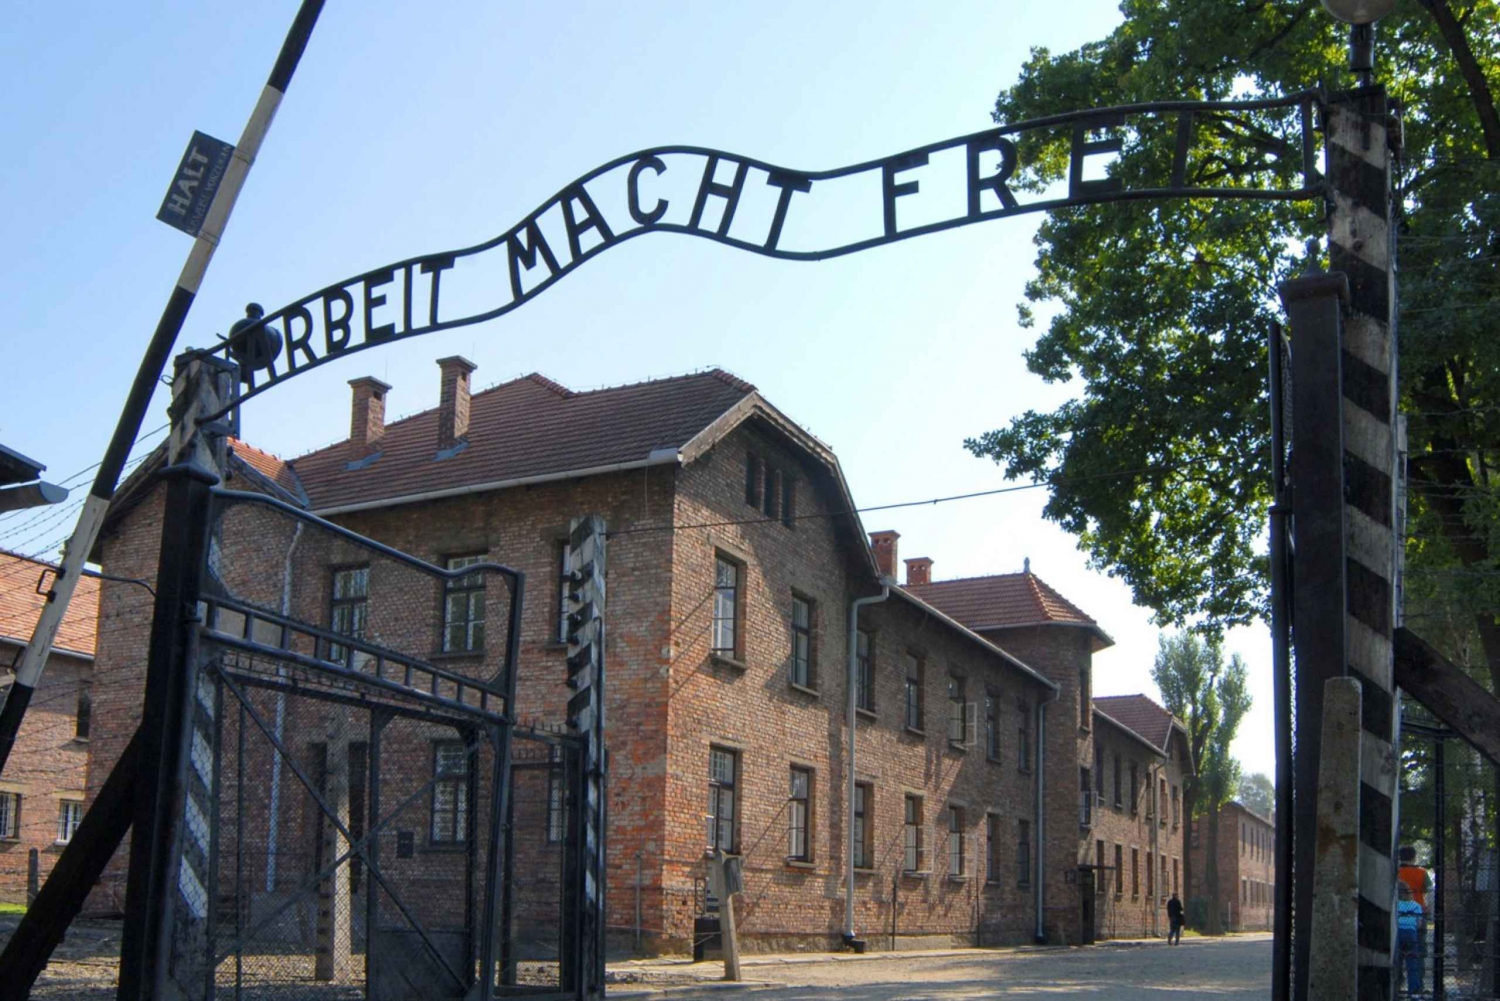 Z Krakowa: wycieczka do Auschwitz-Birkenau